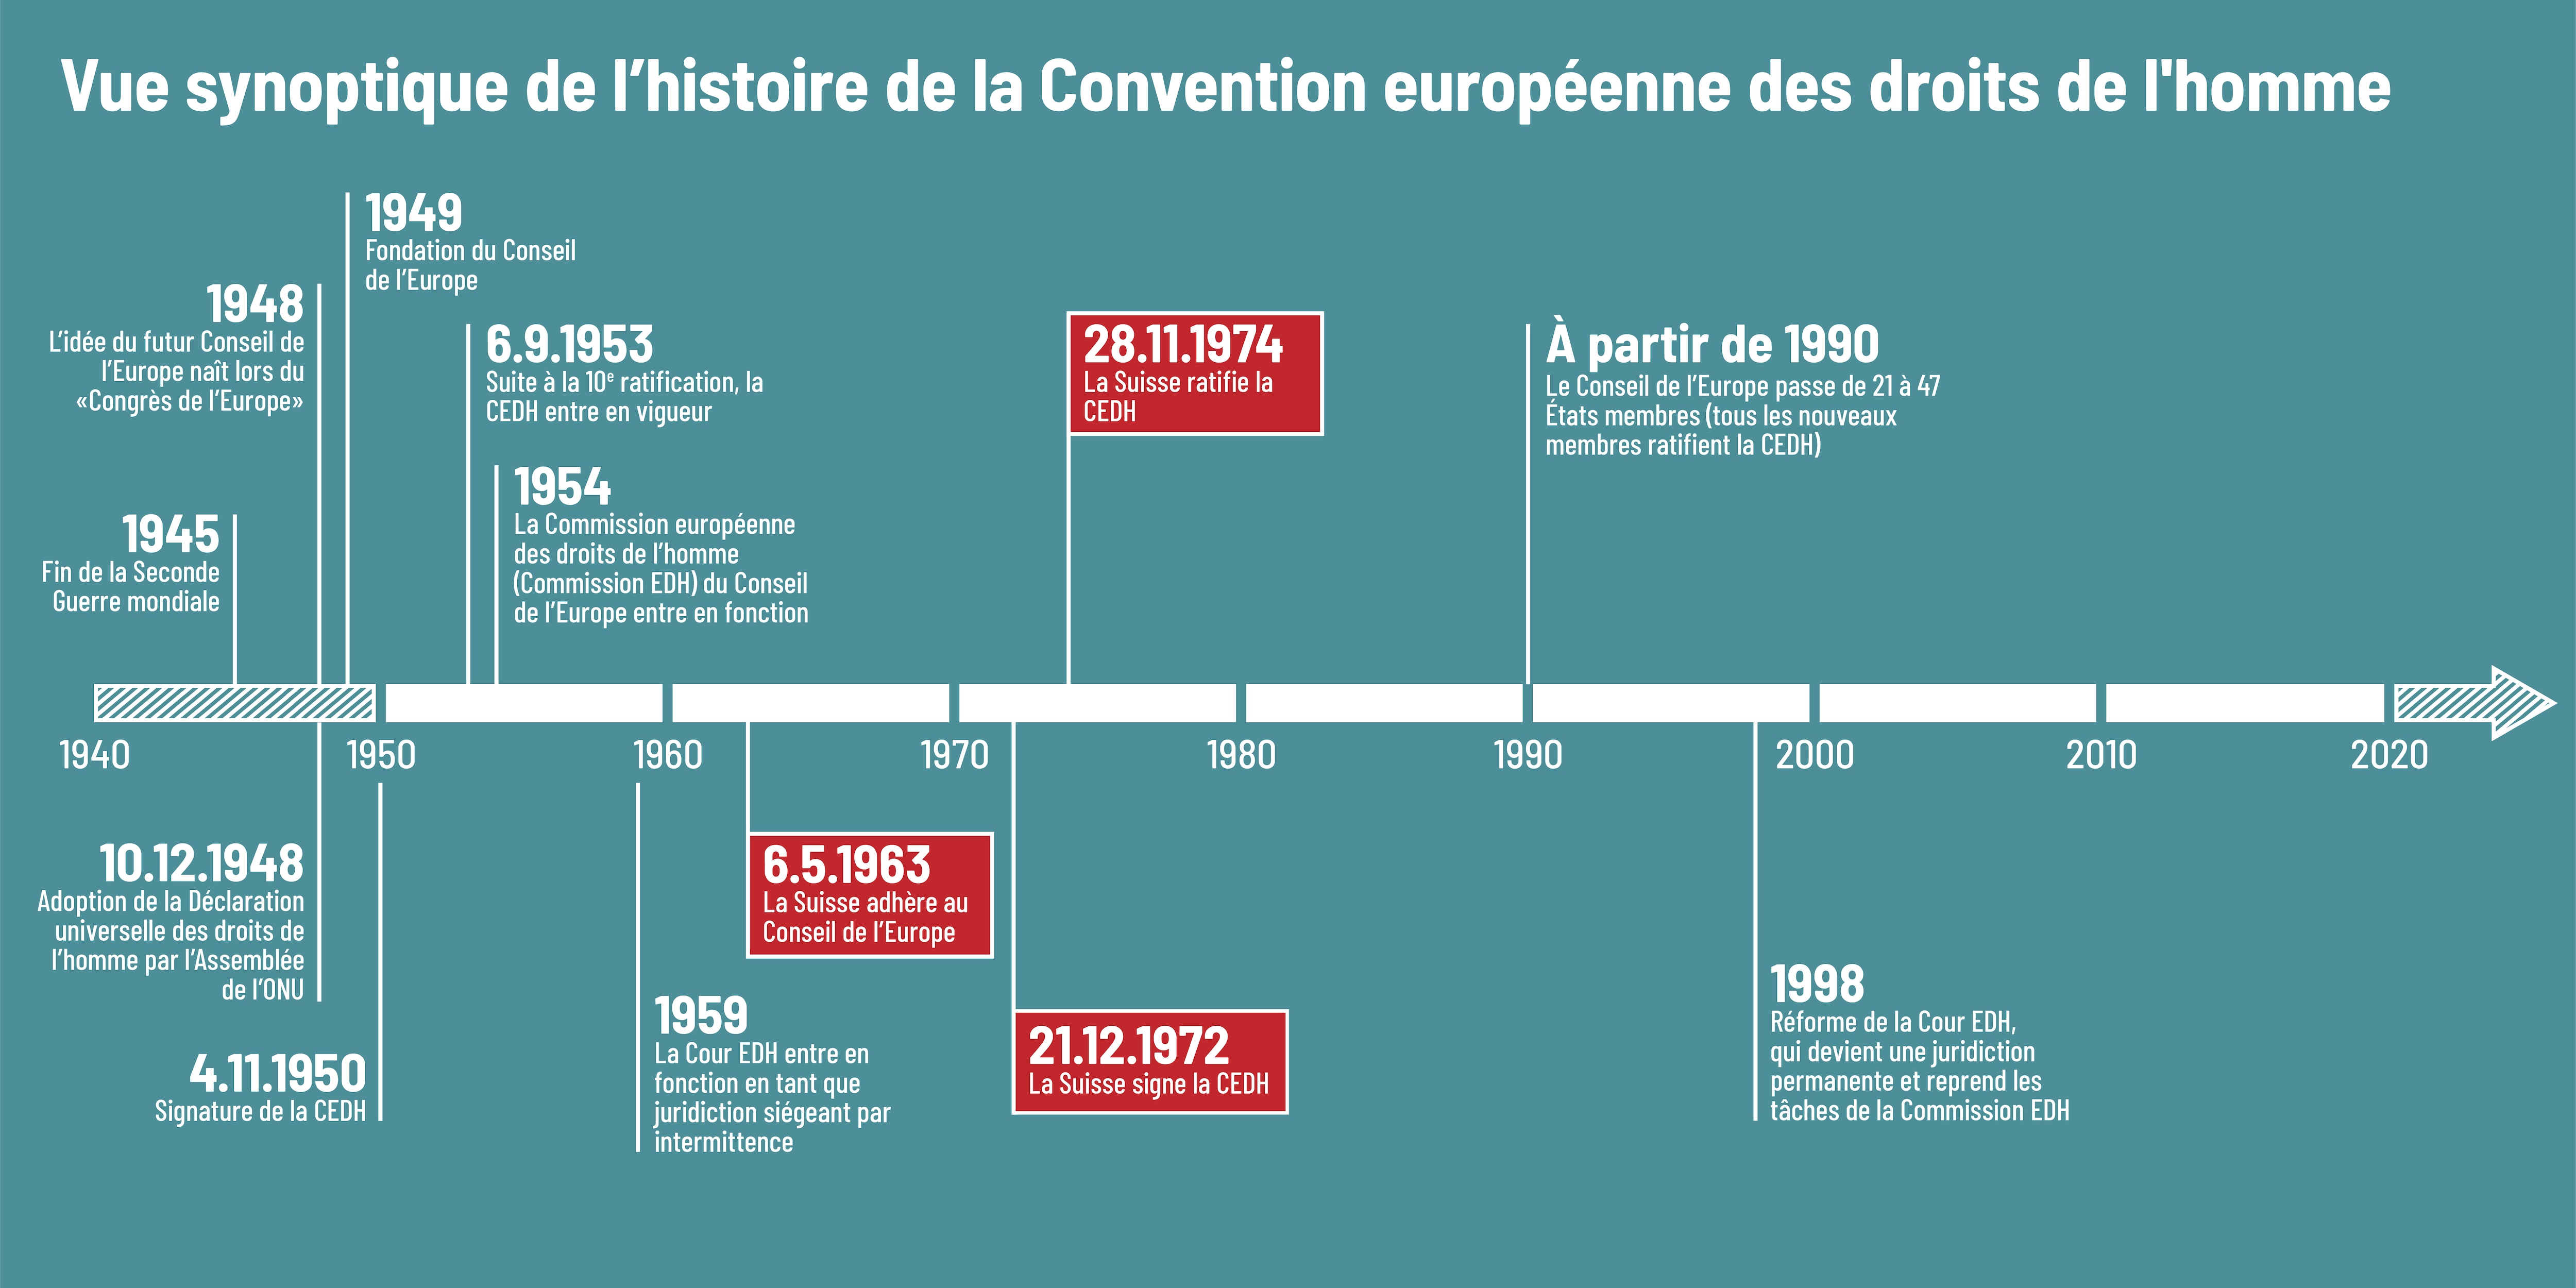 L'image donne un aperçu de l'histoire de la Convention européenne des droits de l'homme et souligne le fait que la Suisse y a adhéré en 1963 et l'a ratifiée en 1974.